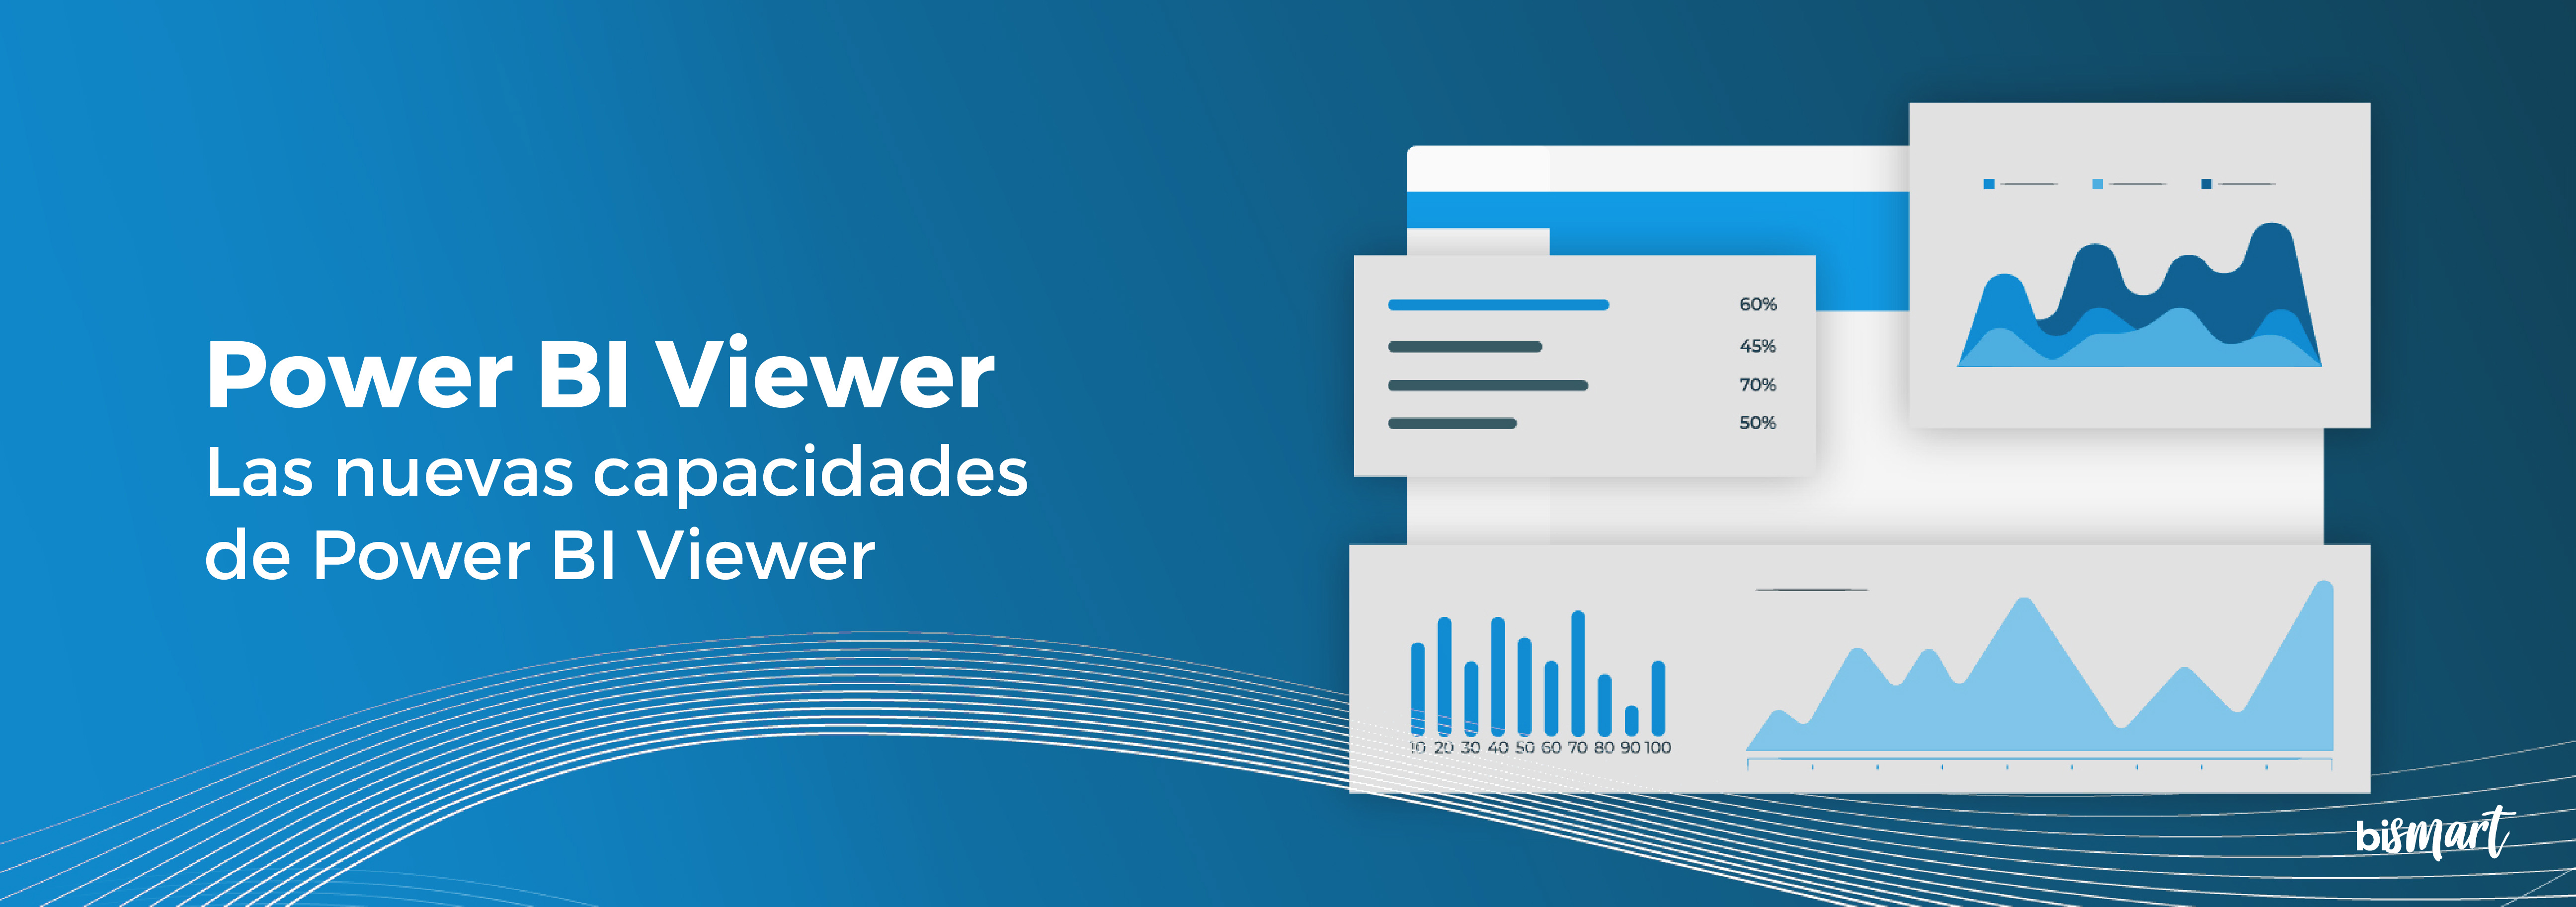 Power BI Viewer Update: Las nuevas capacidades Power BI Viewer 1.1